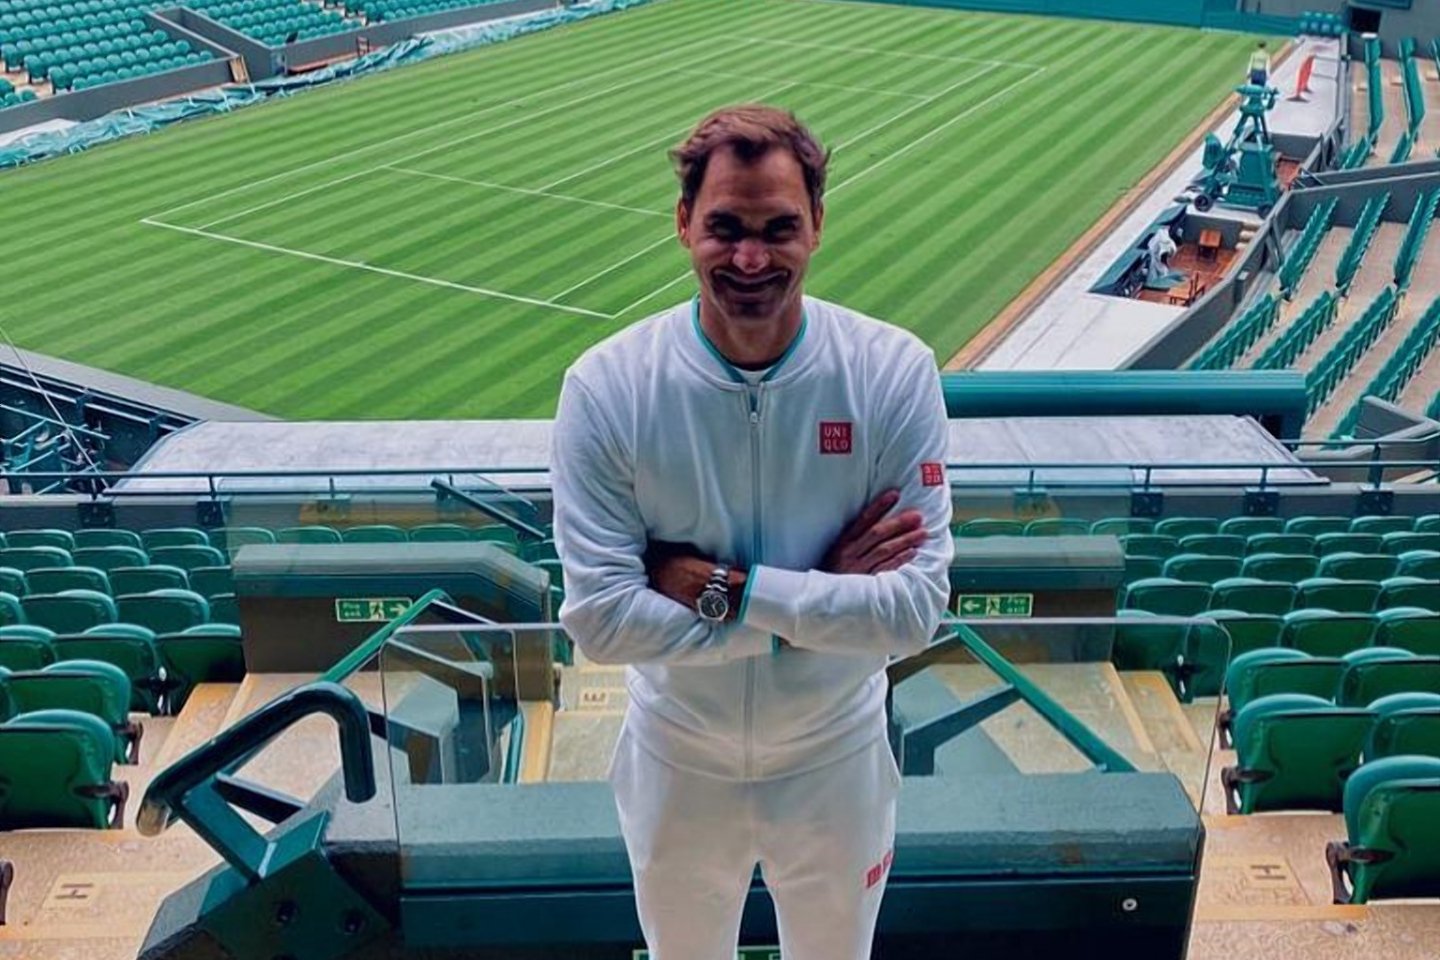 Новости спорта / Новости спорта в мире и Казахстане / Известный теннисист Роджер Федерер заявил о скором завершении карьеры